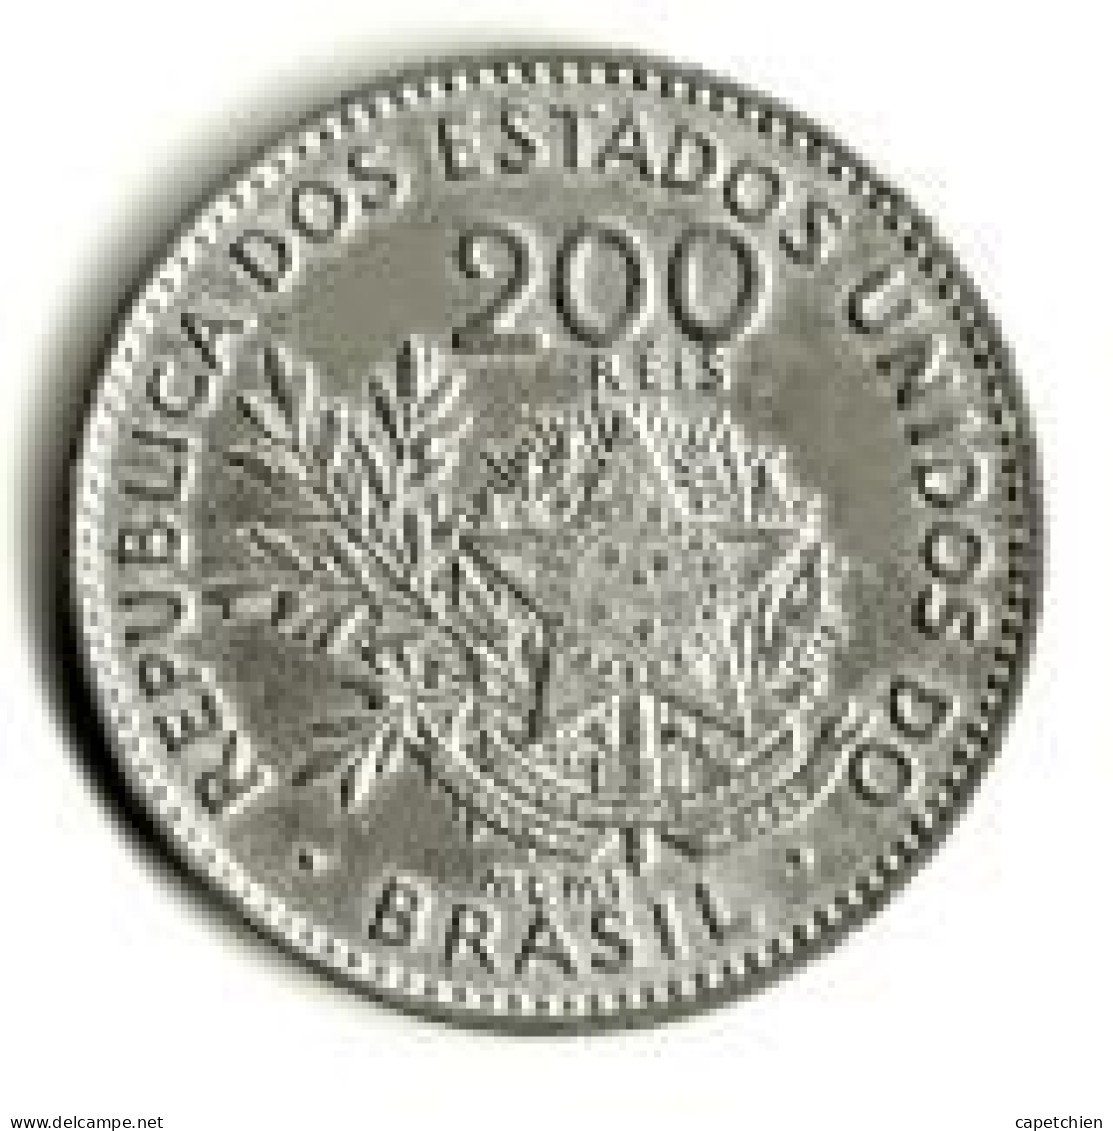 BRESIL / REPUBLICA DOS ESTADOS DO BRAZIL / 200 REIS / 1901 - Brasilien